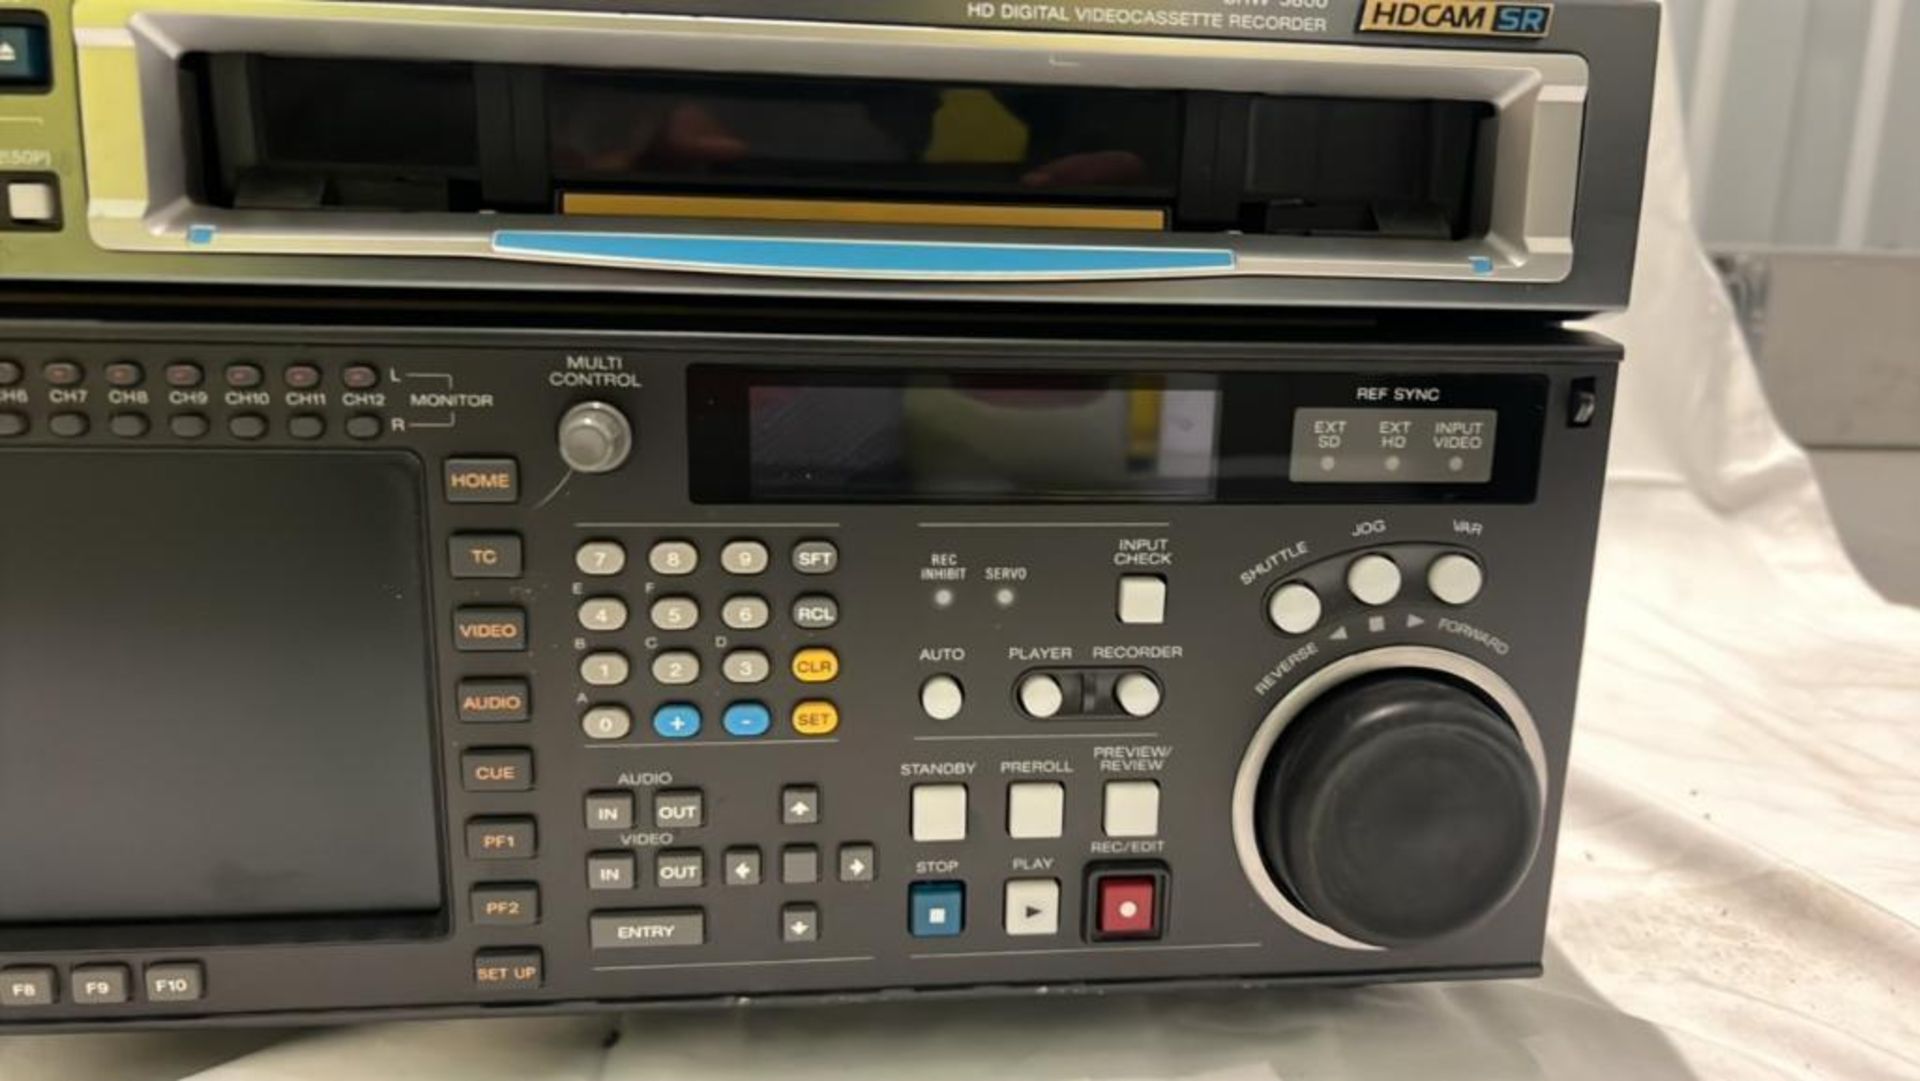 Sony SRW-5800/2 HDCAM Studio Recorder with flight case SN: 12335 - Image 6 of 8